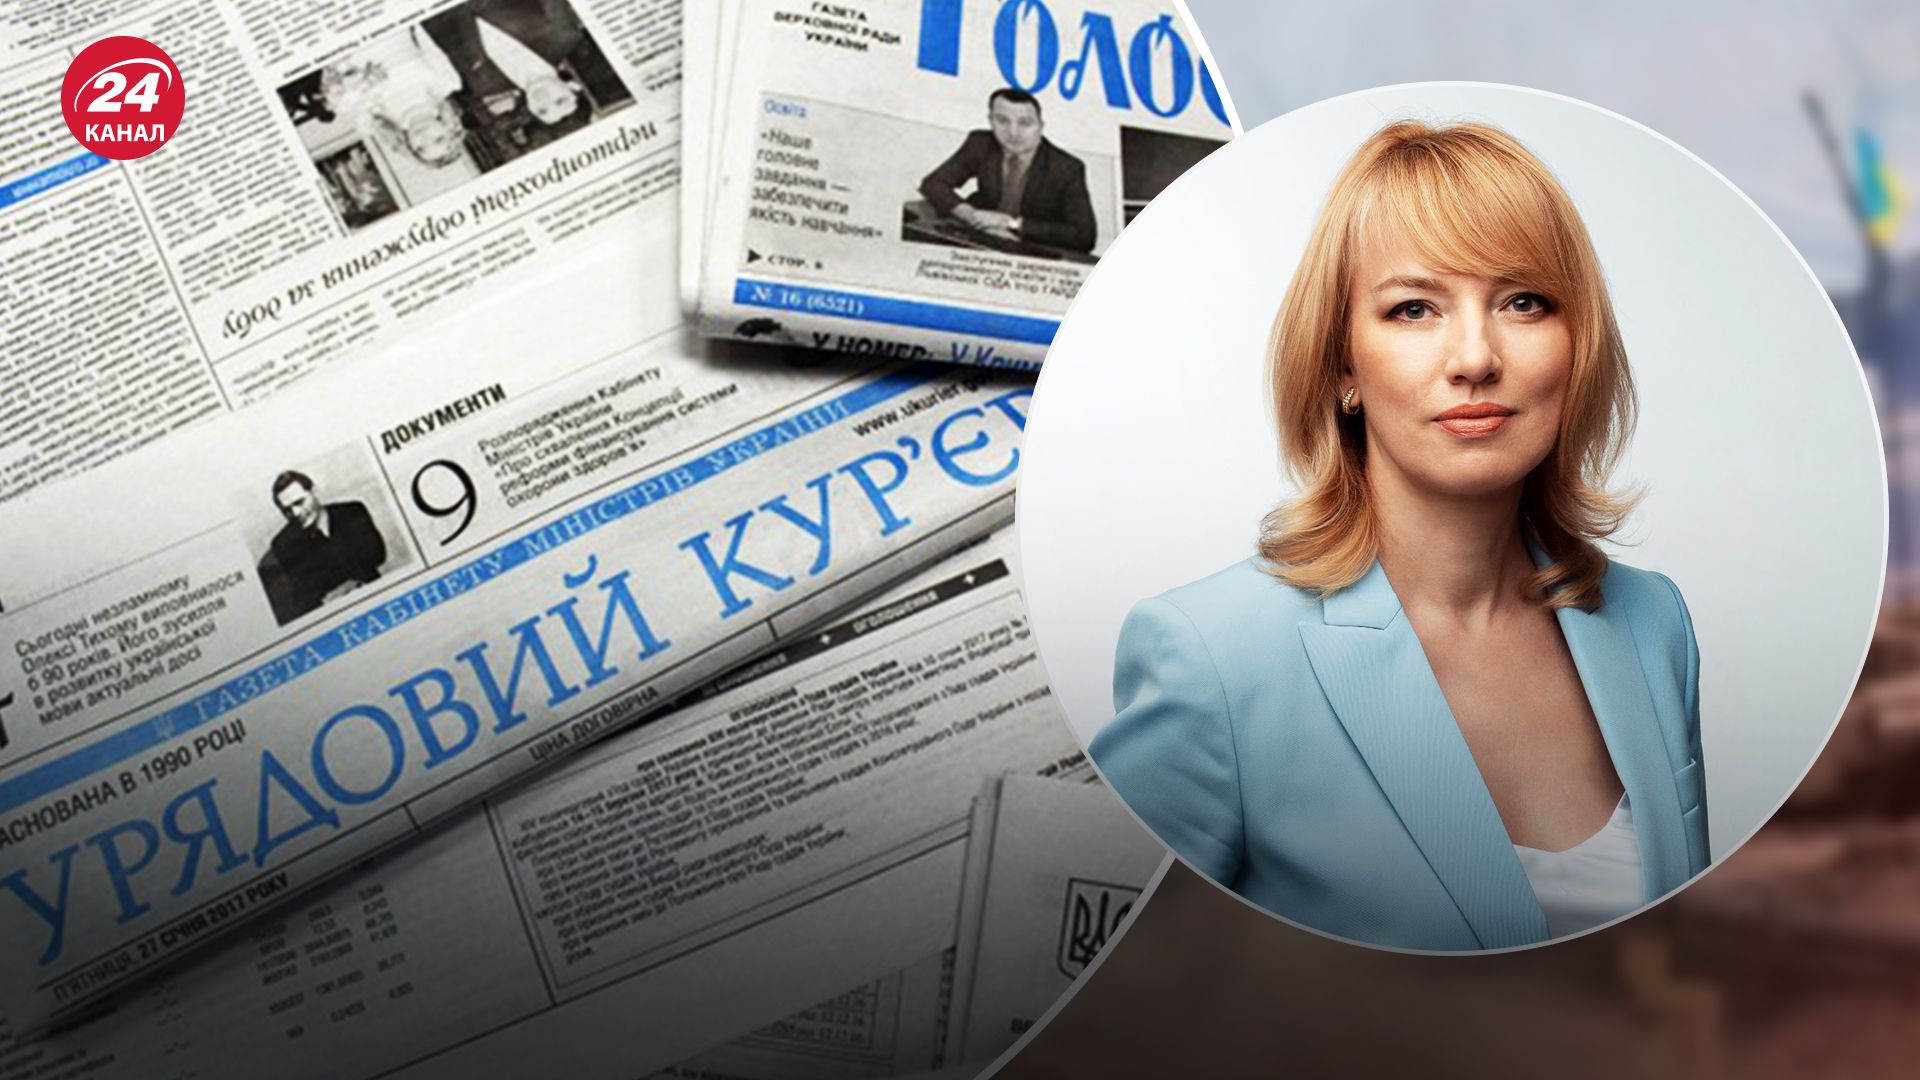 Шуляк подвергла цензуре государственную газету "Урядовый курьер"